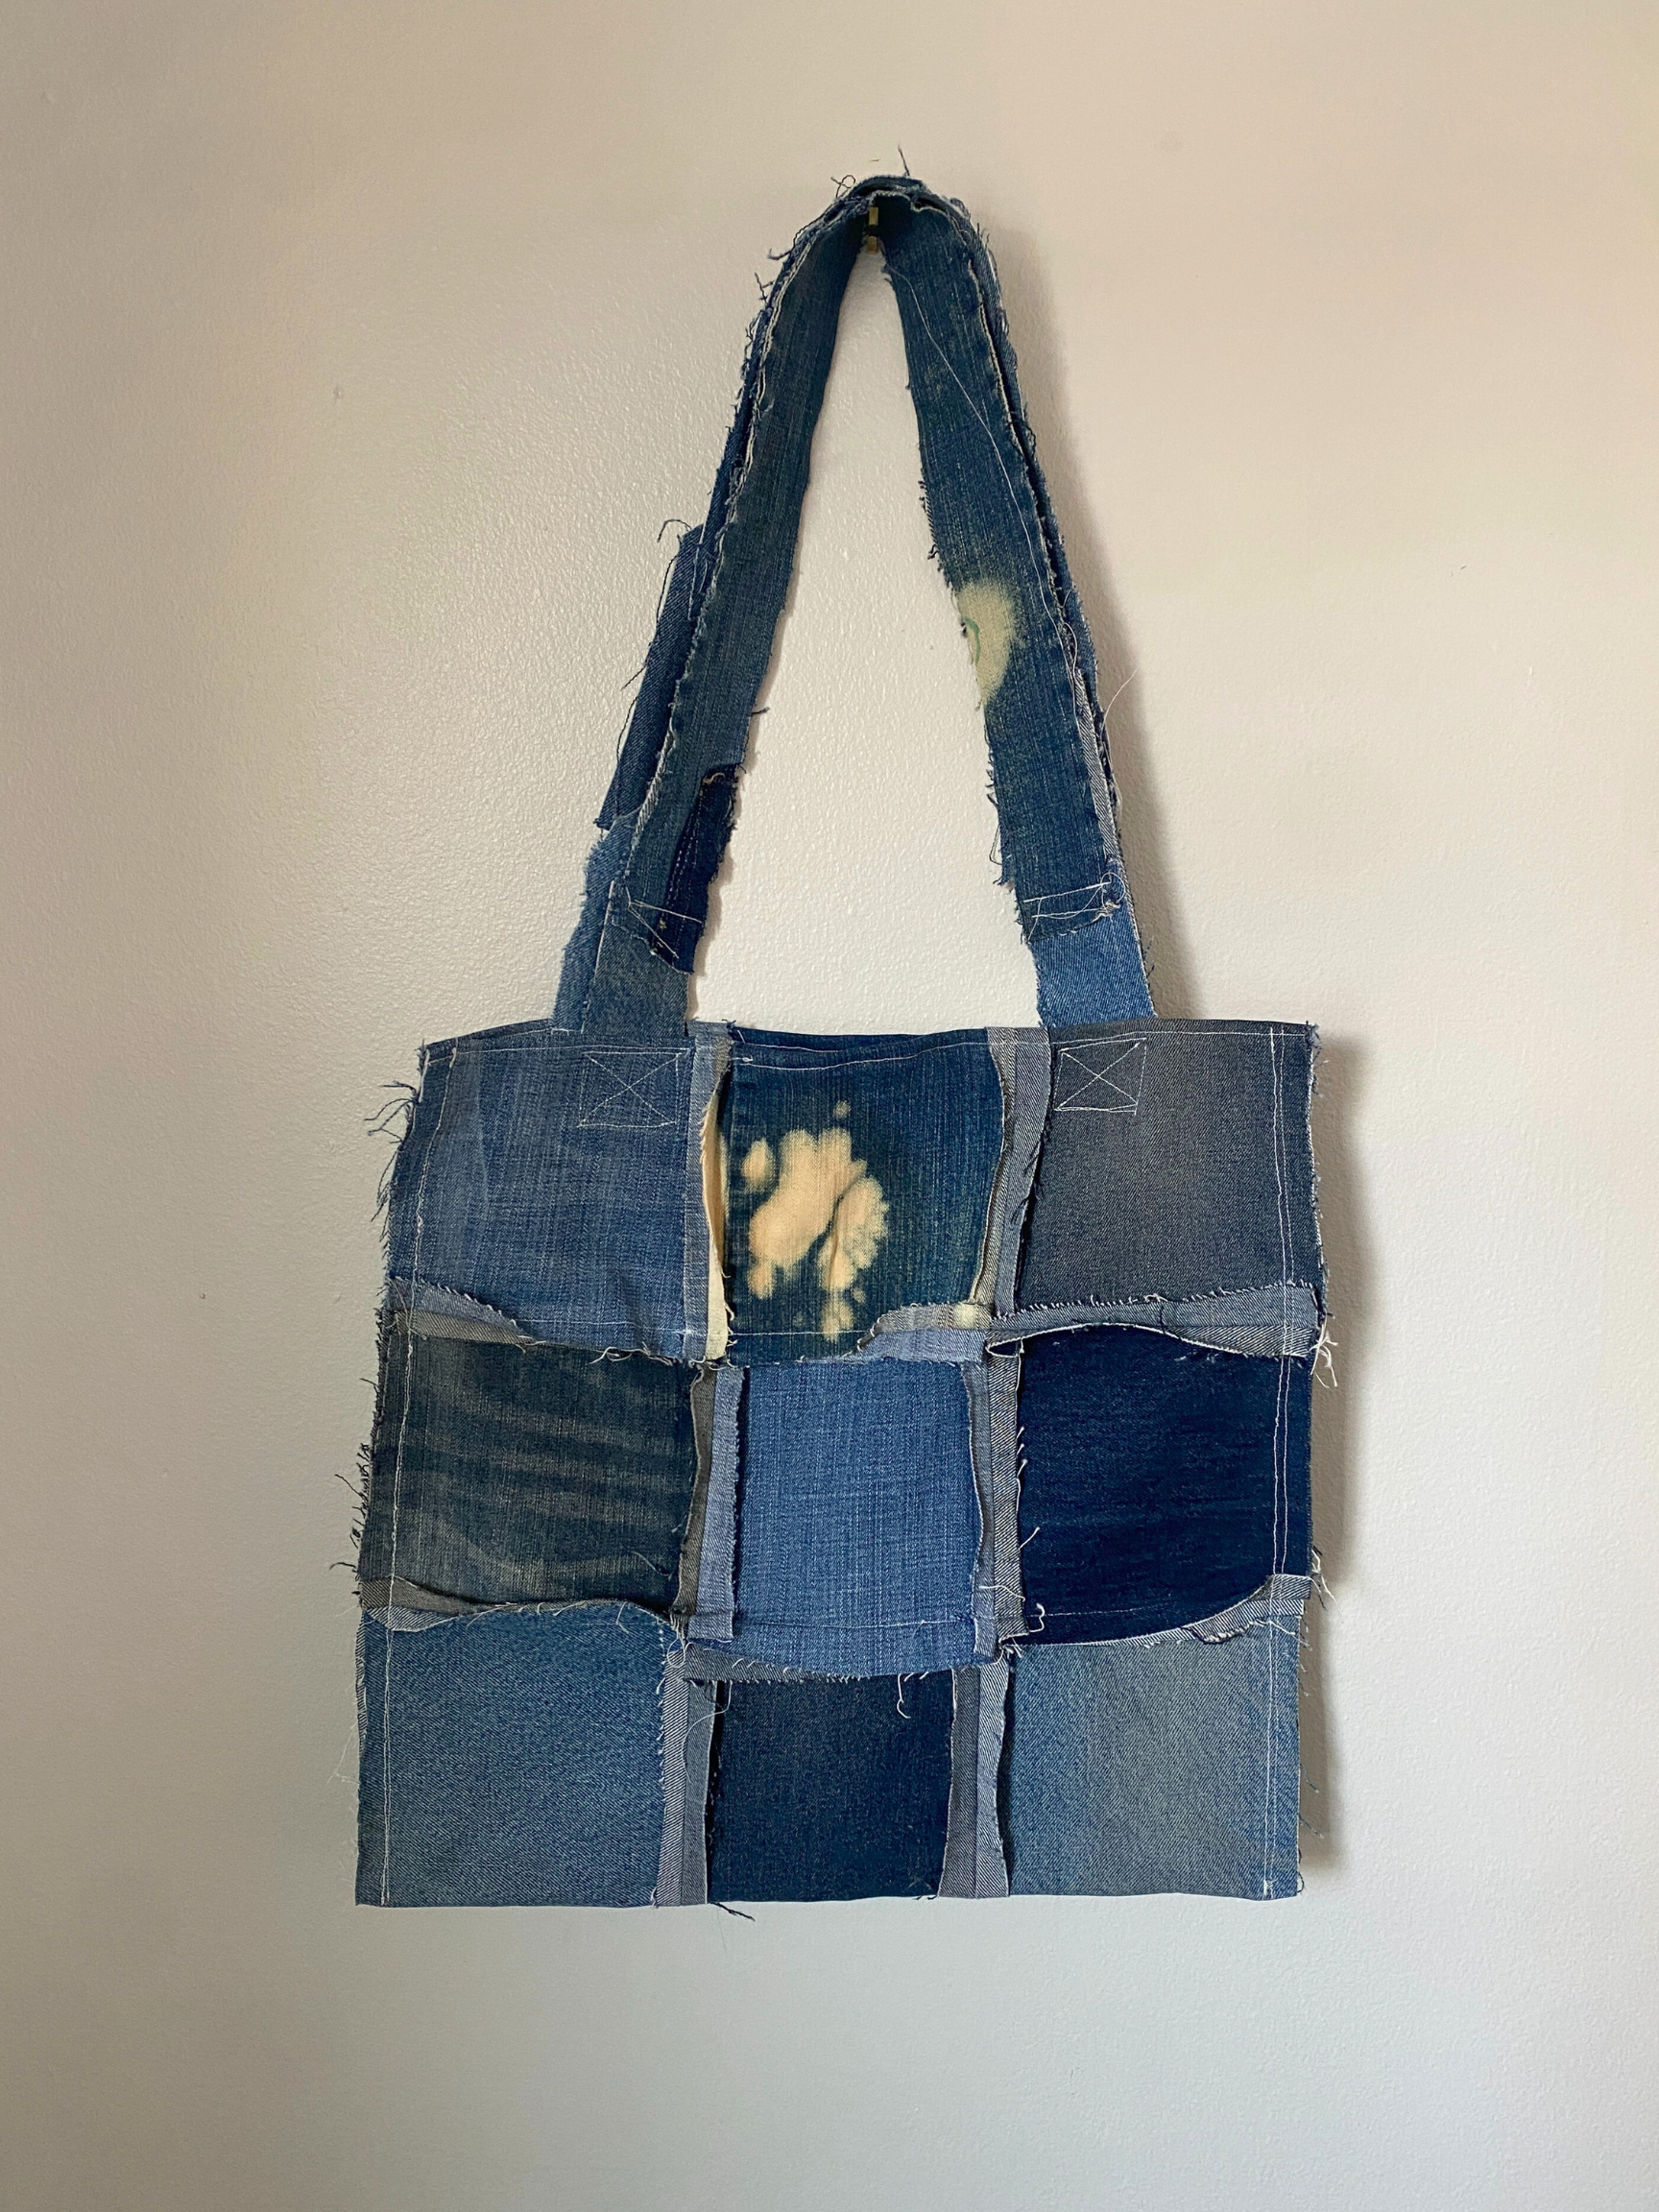 Distressed Denim Tote 21- Recycled Denim Patchwork Jumbo Tote Bag